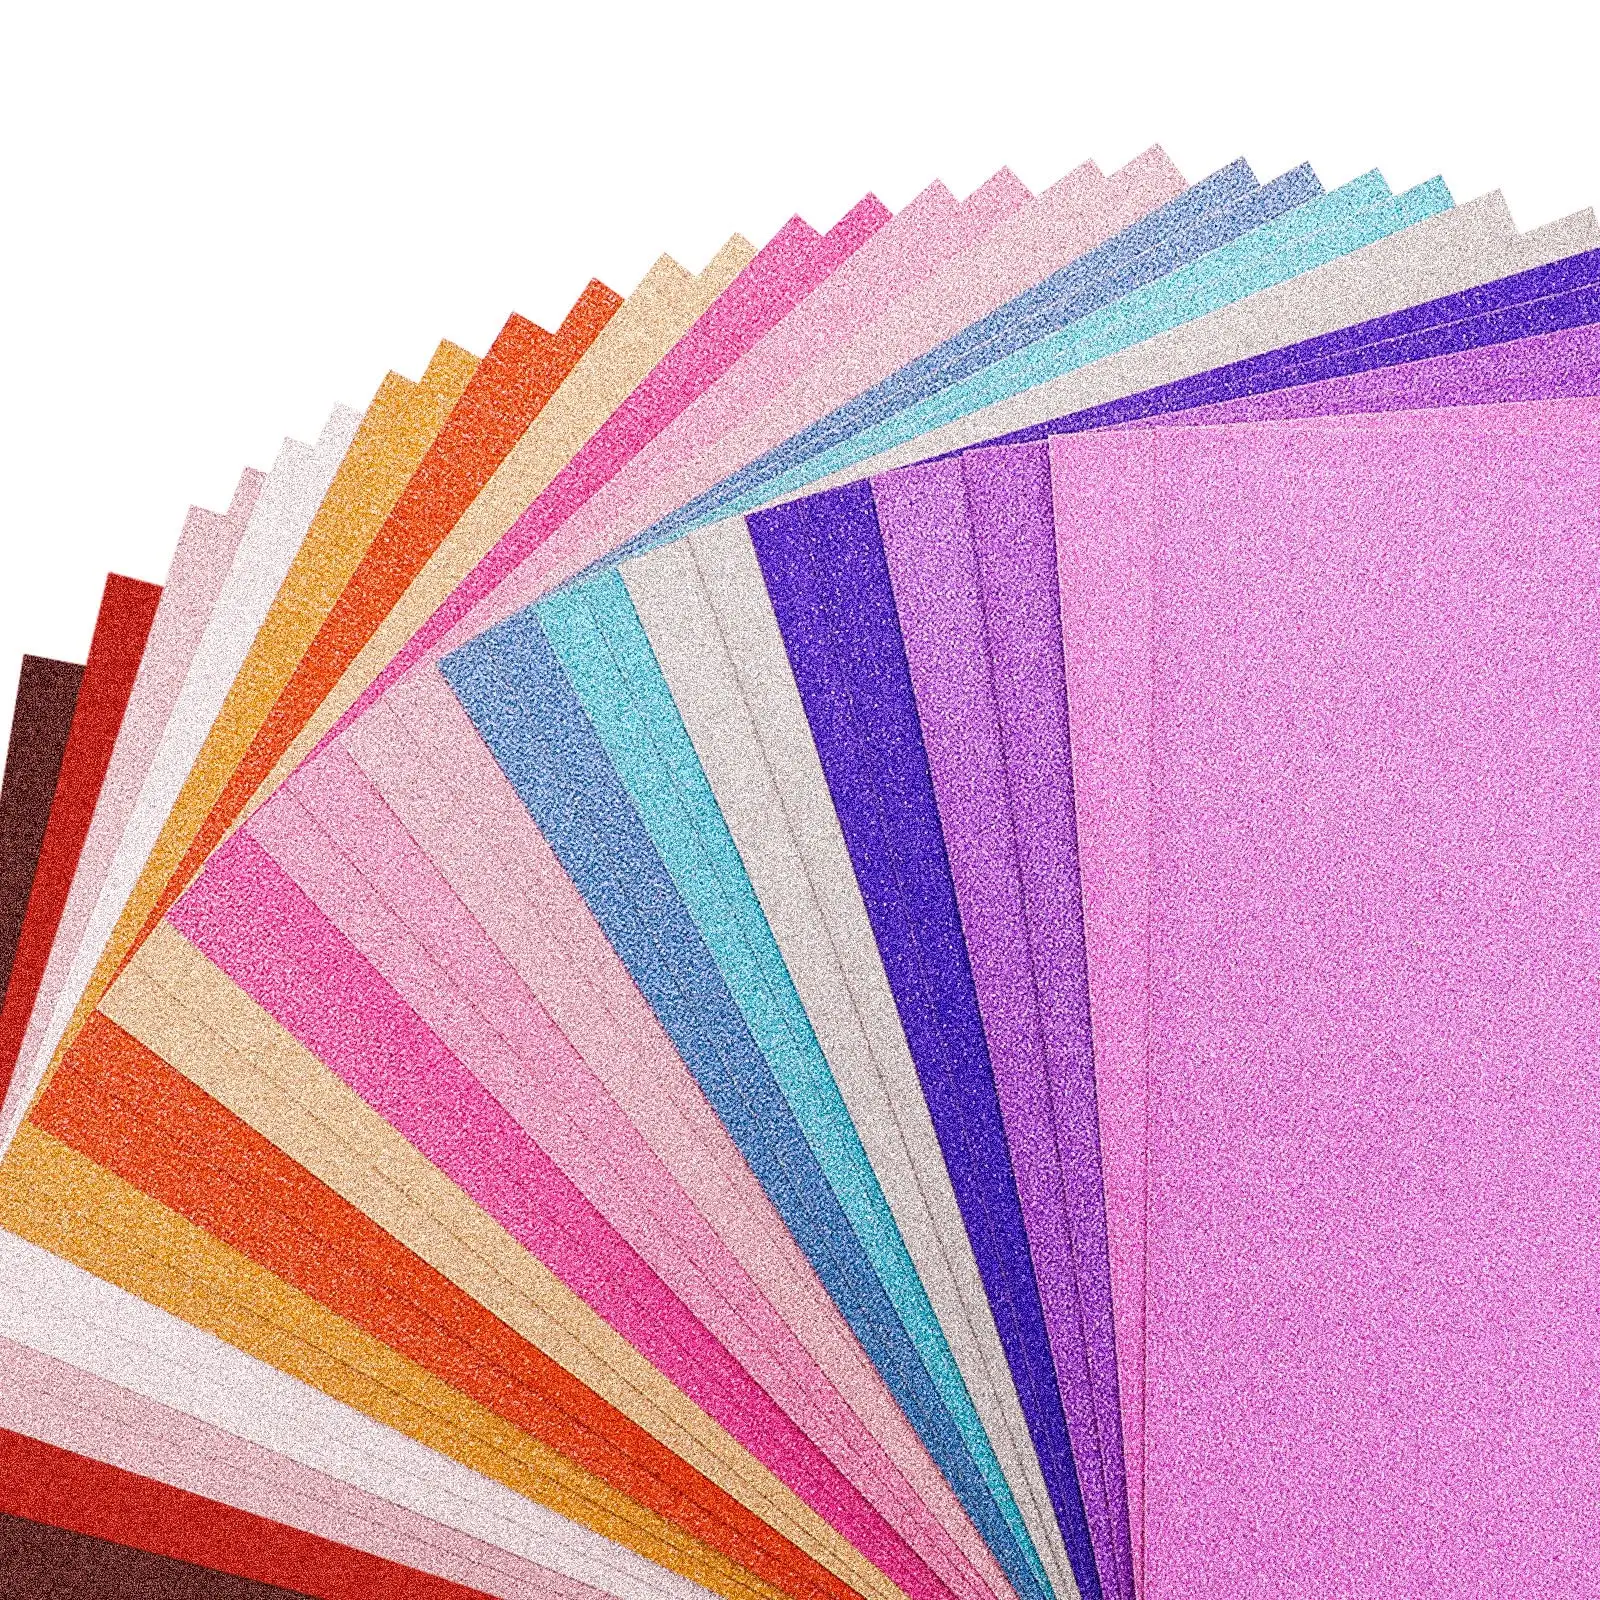 ورق بطاقات لامع من 30 ورقة متينة سميكة لامعة من الورق اليدوي متوفرة بـ 16 لونًا لصنع البطاقات الورقية اليدوية